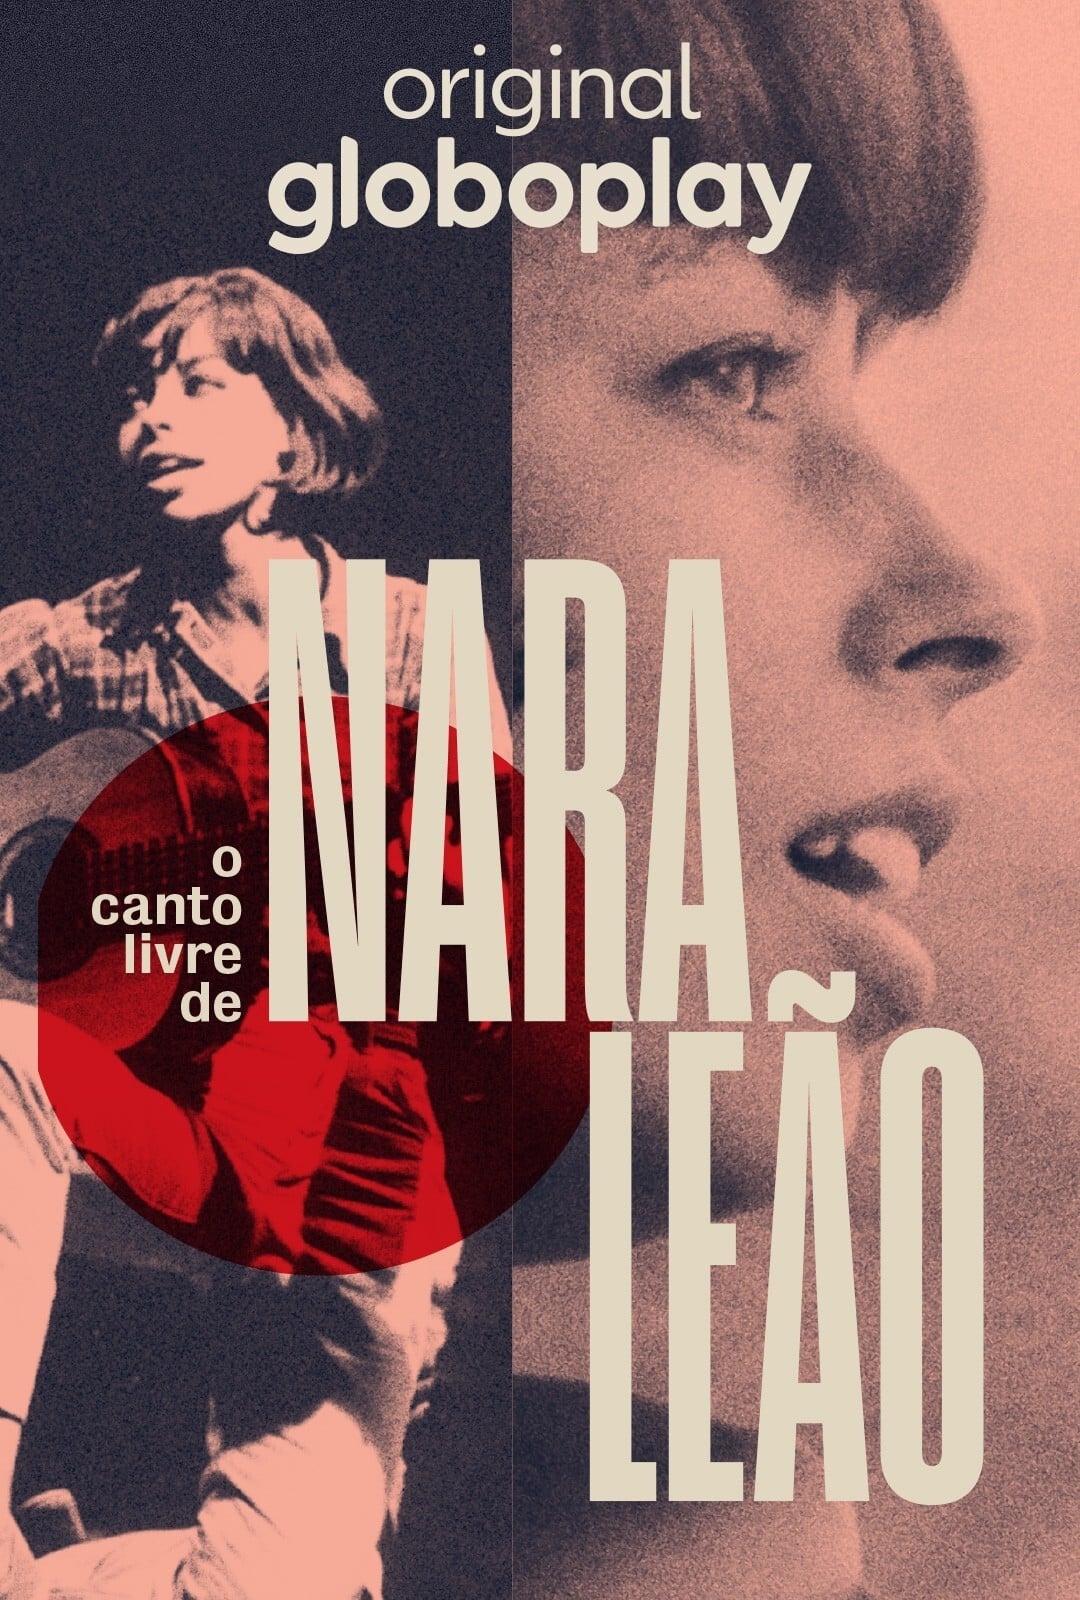 O Canto Livre de Nara Leão TV Shows About Biography